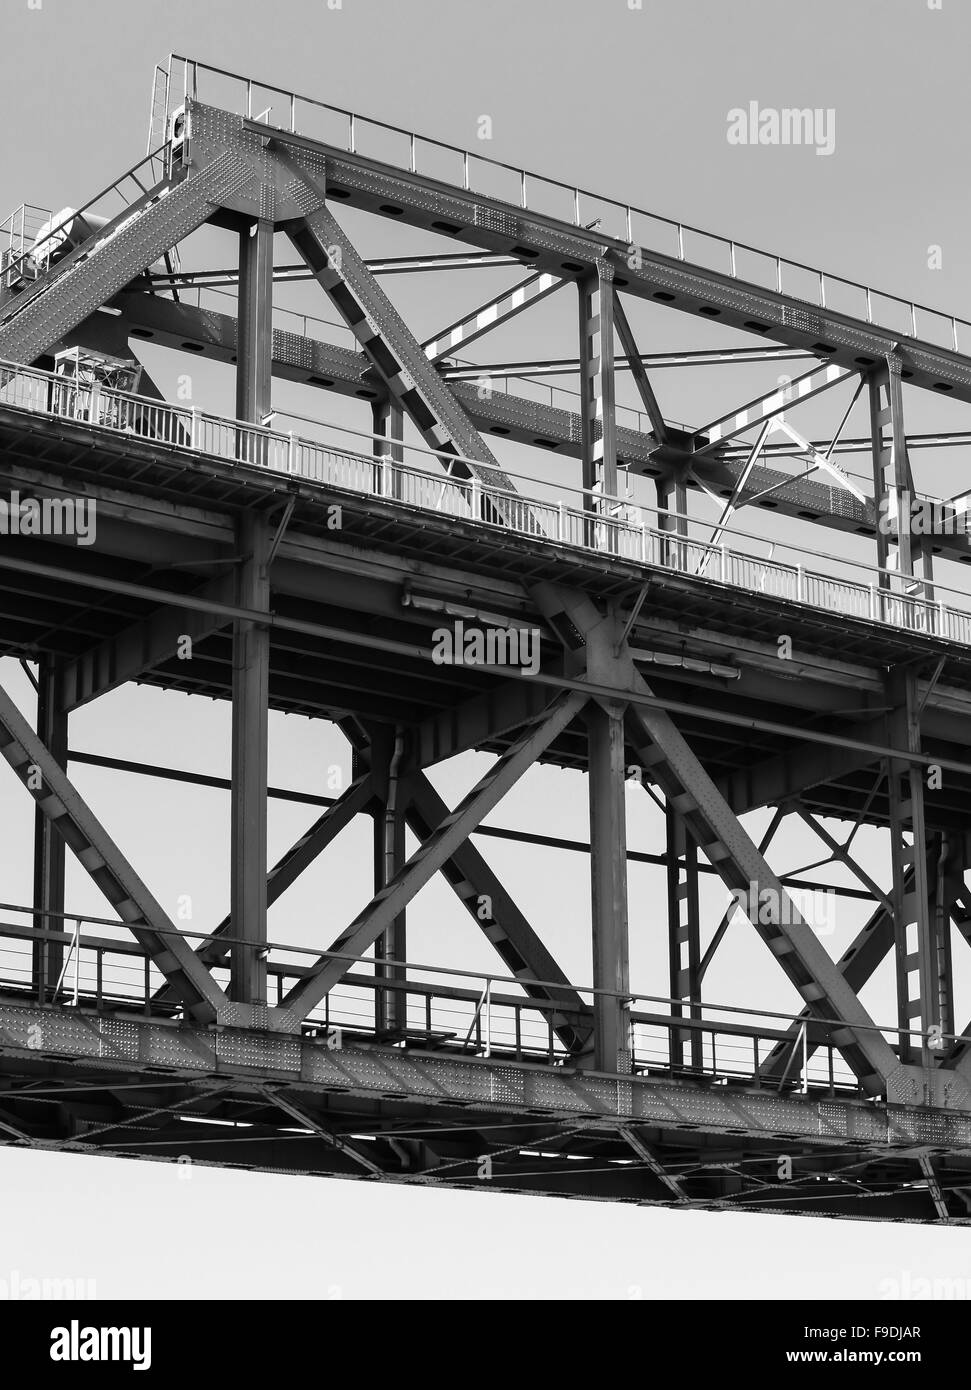 Fachwerk-Stahlbrücke Bau Fragment, schwarz / weiß Foto Stockfoto